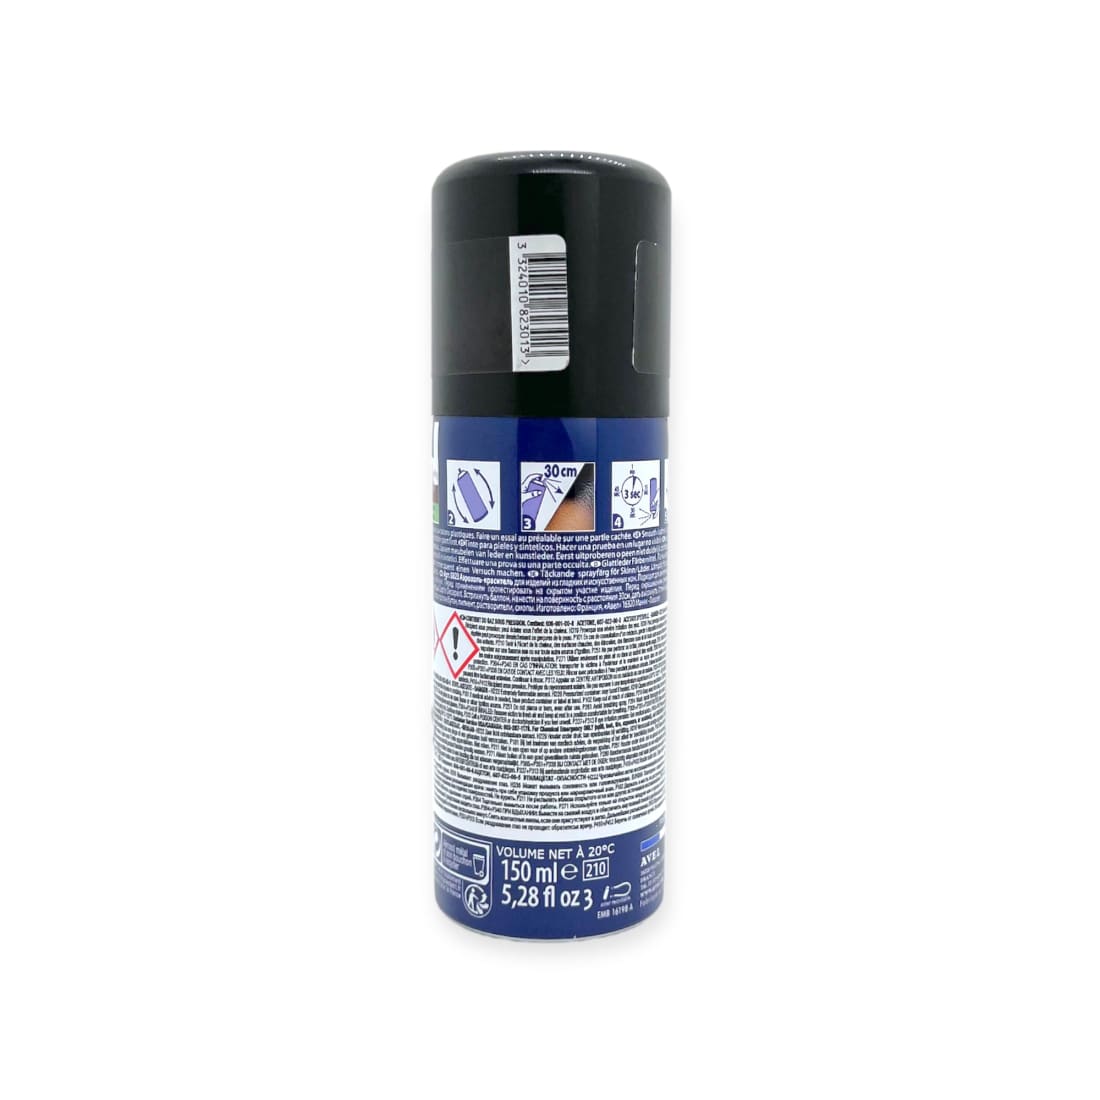 Spray Tenax Teinture Bouleau - Saphir - 150 ml - Accessoires